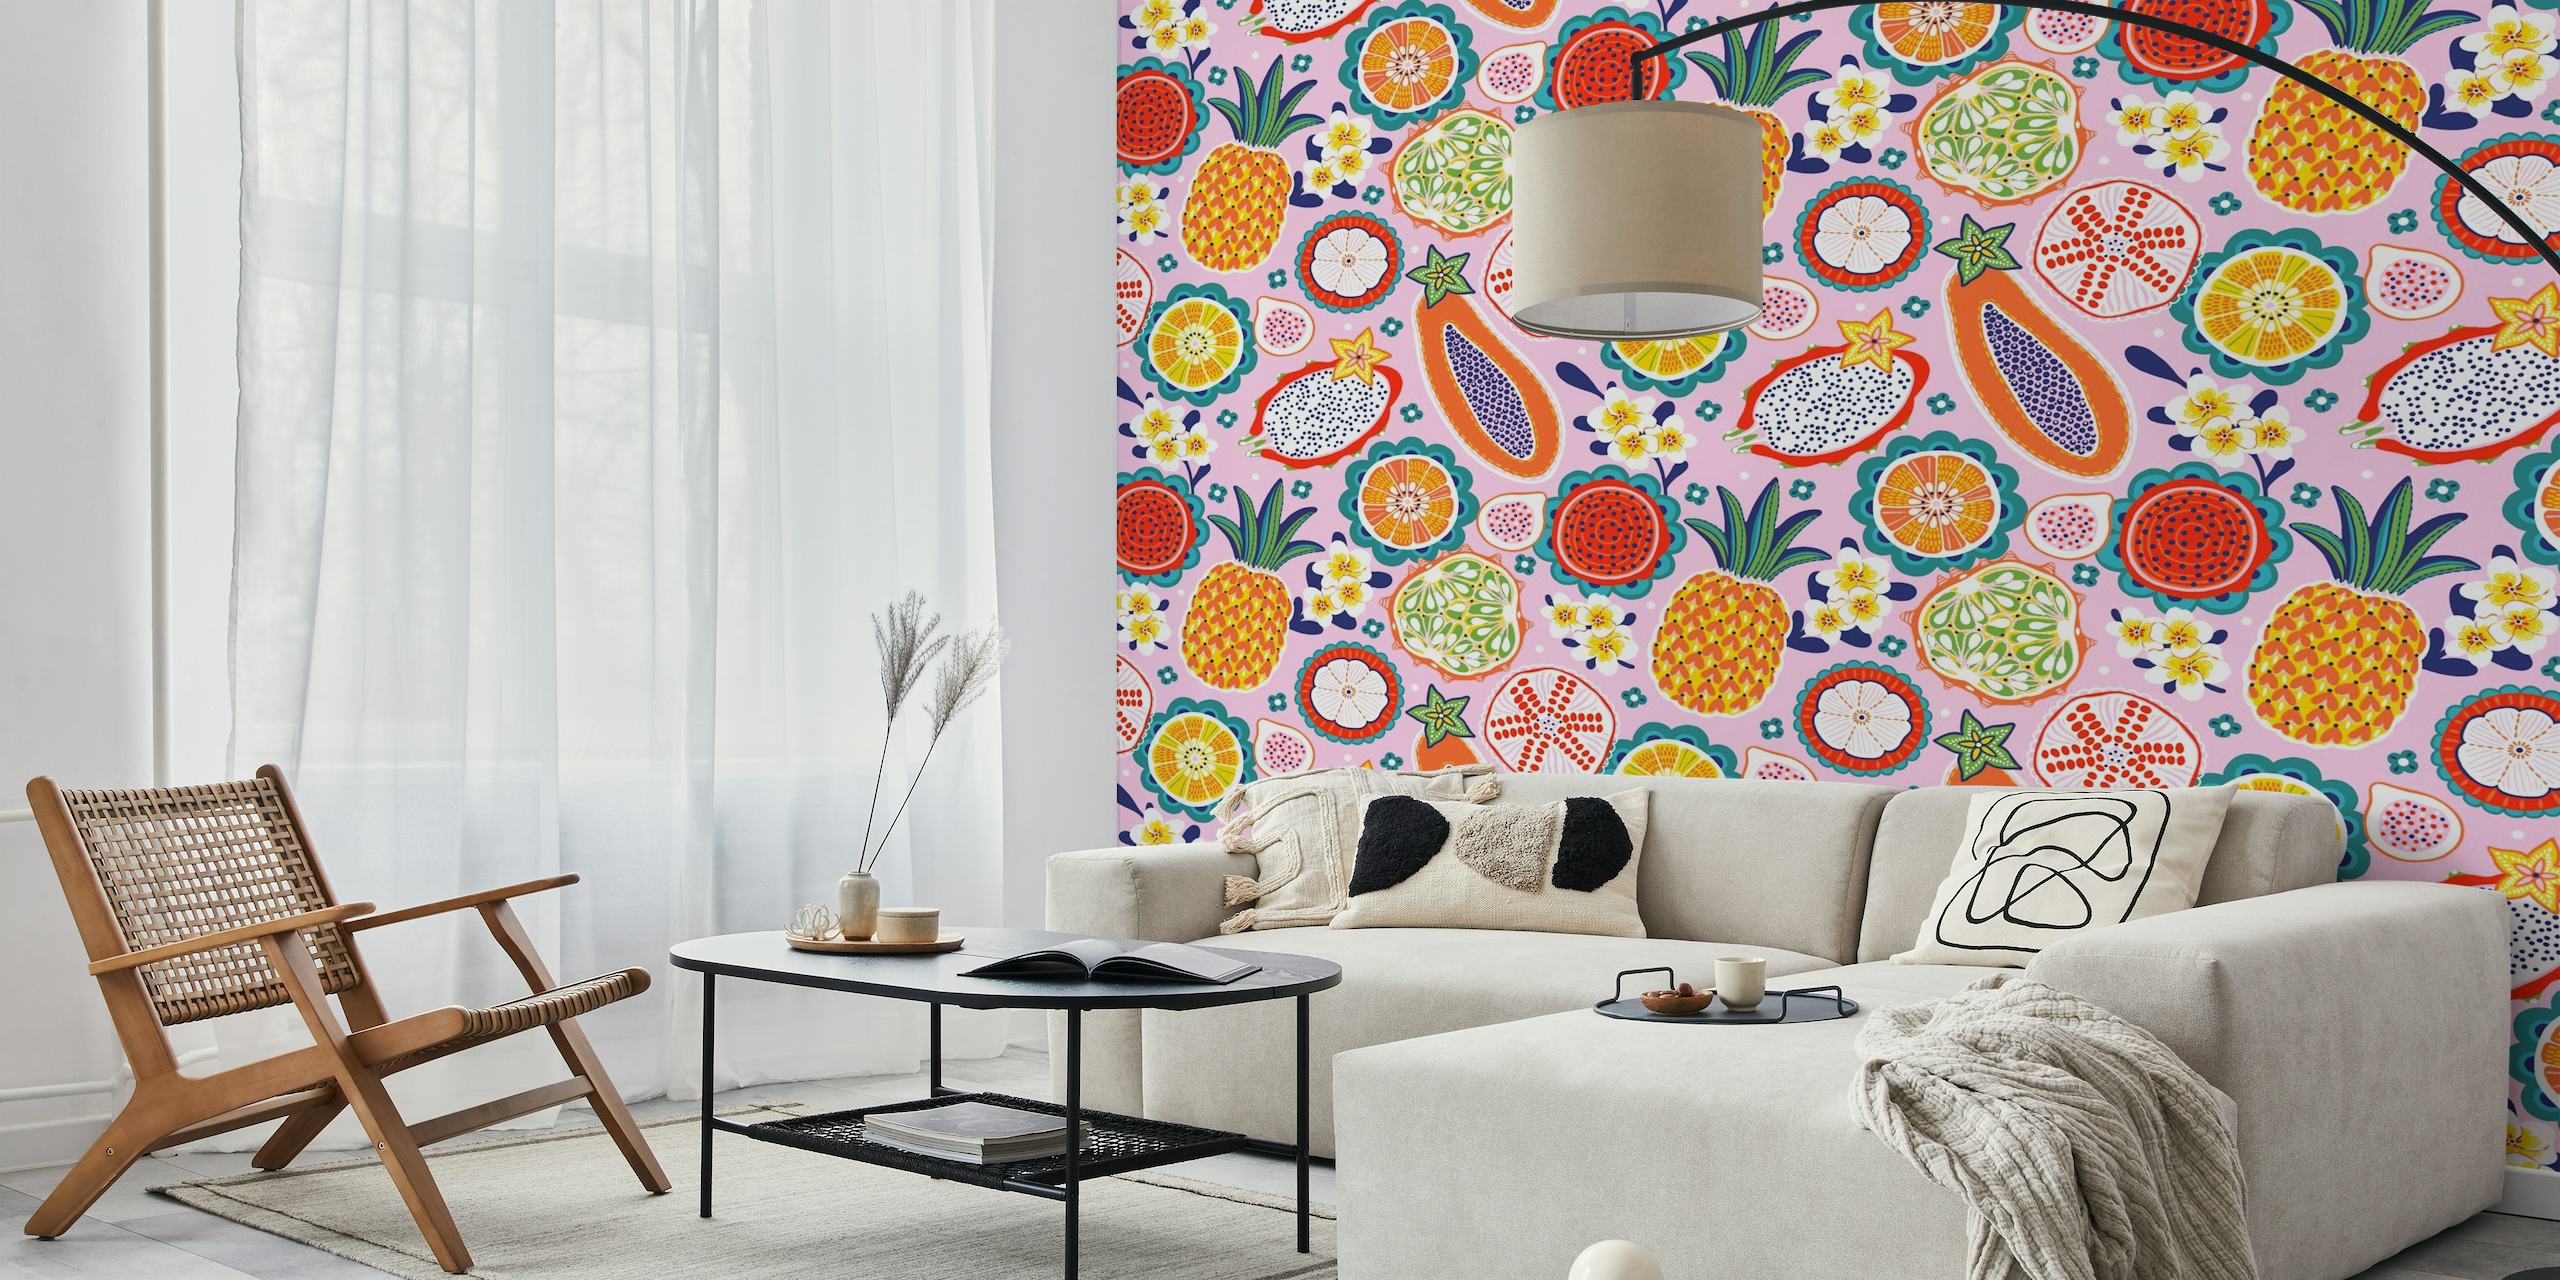 Farverigt vægmaleri med ananas, dragefrugt og tropisk citrusdesign på en baggrund med romantisk ø-tema